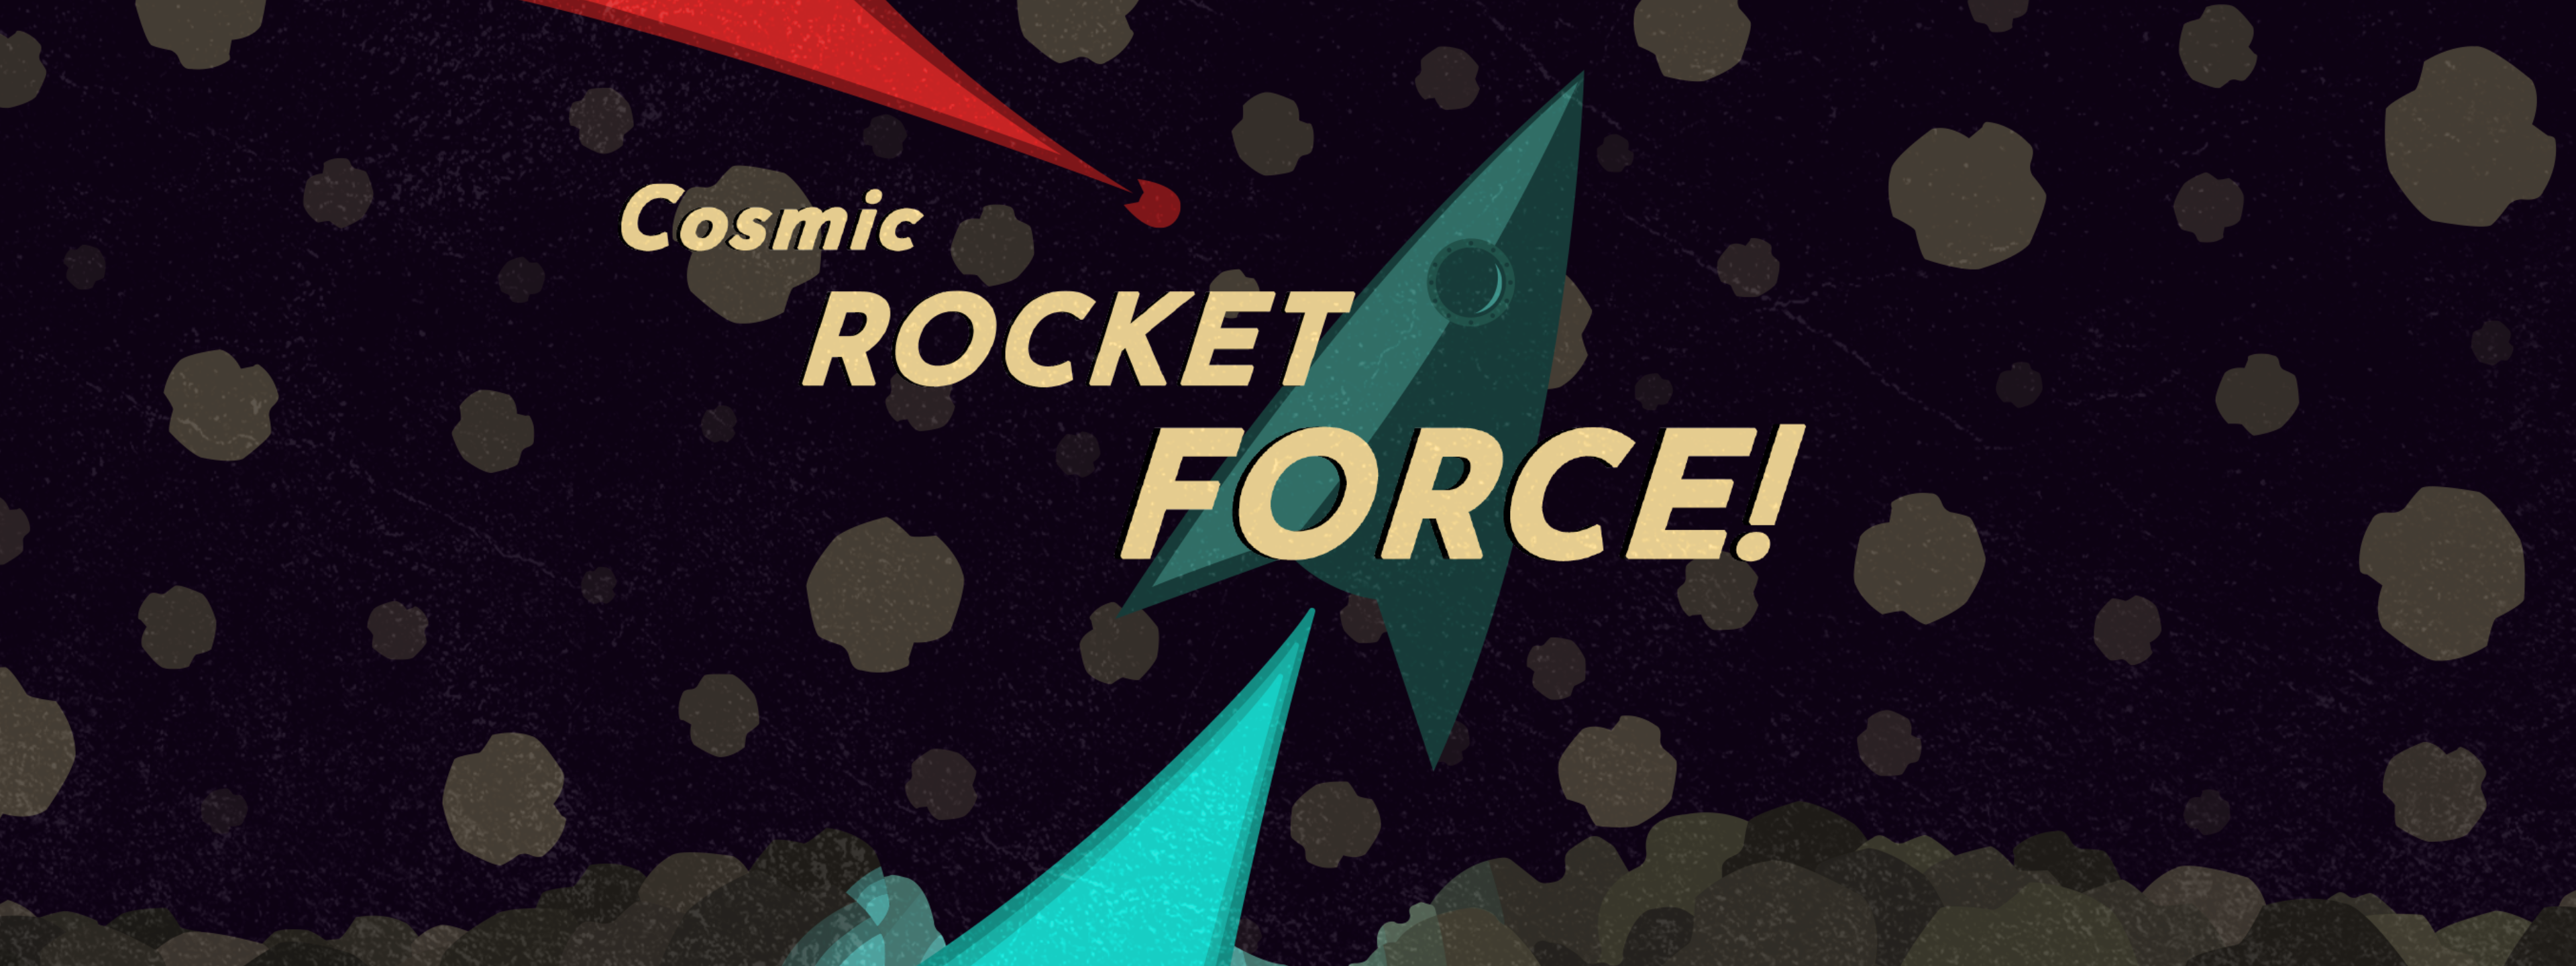 Cosmic Rocket Force